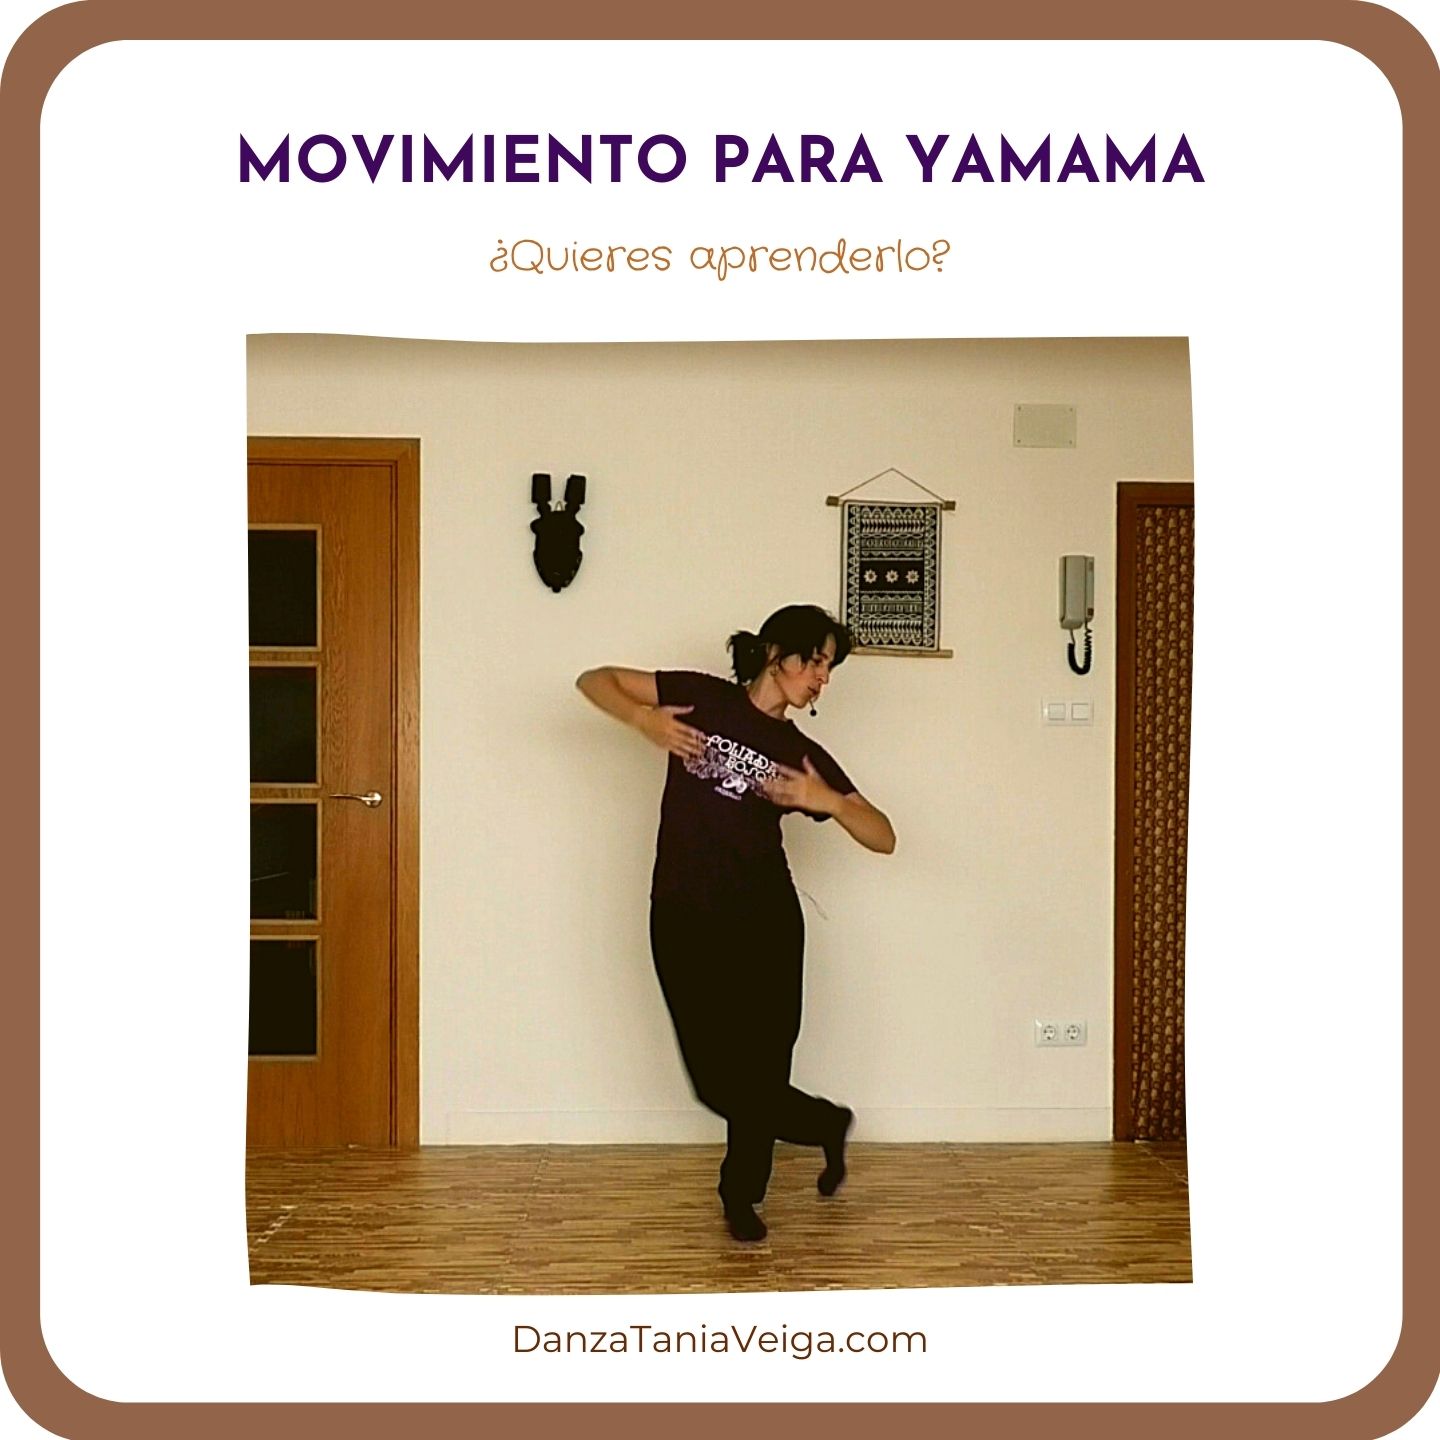 Un movimiento del ritmo Yamama